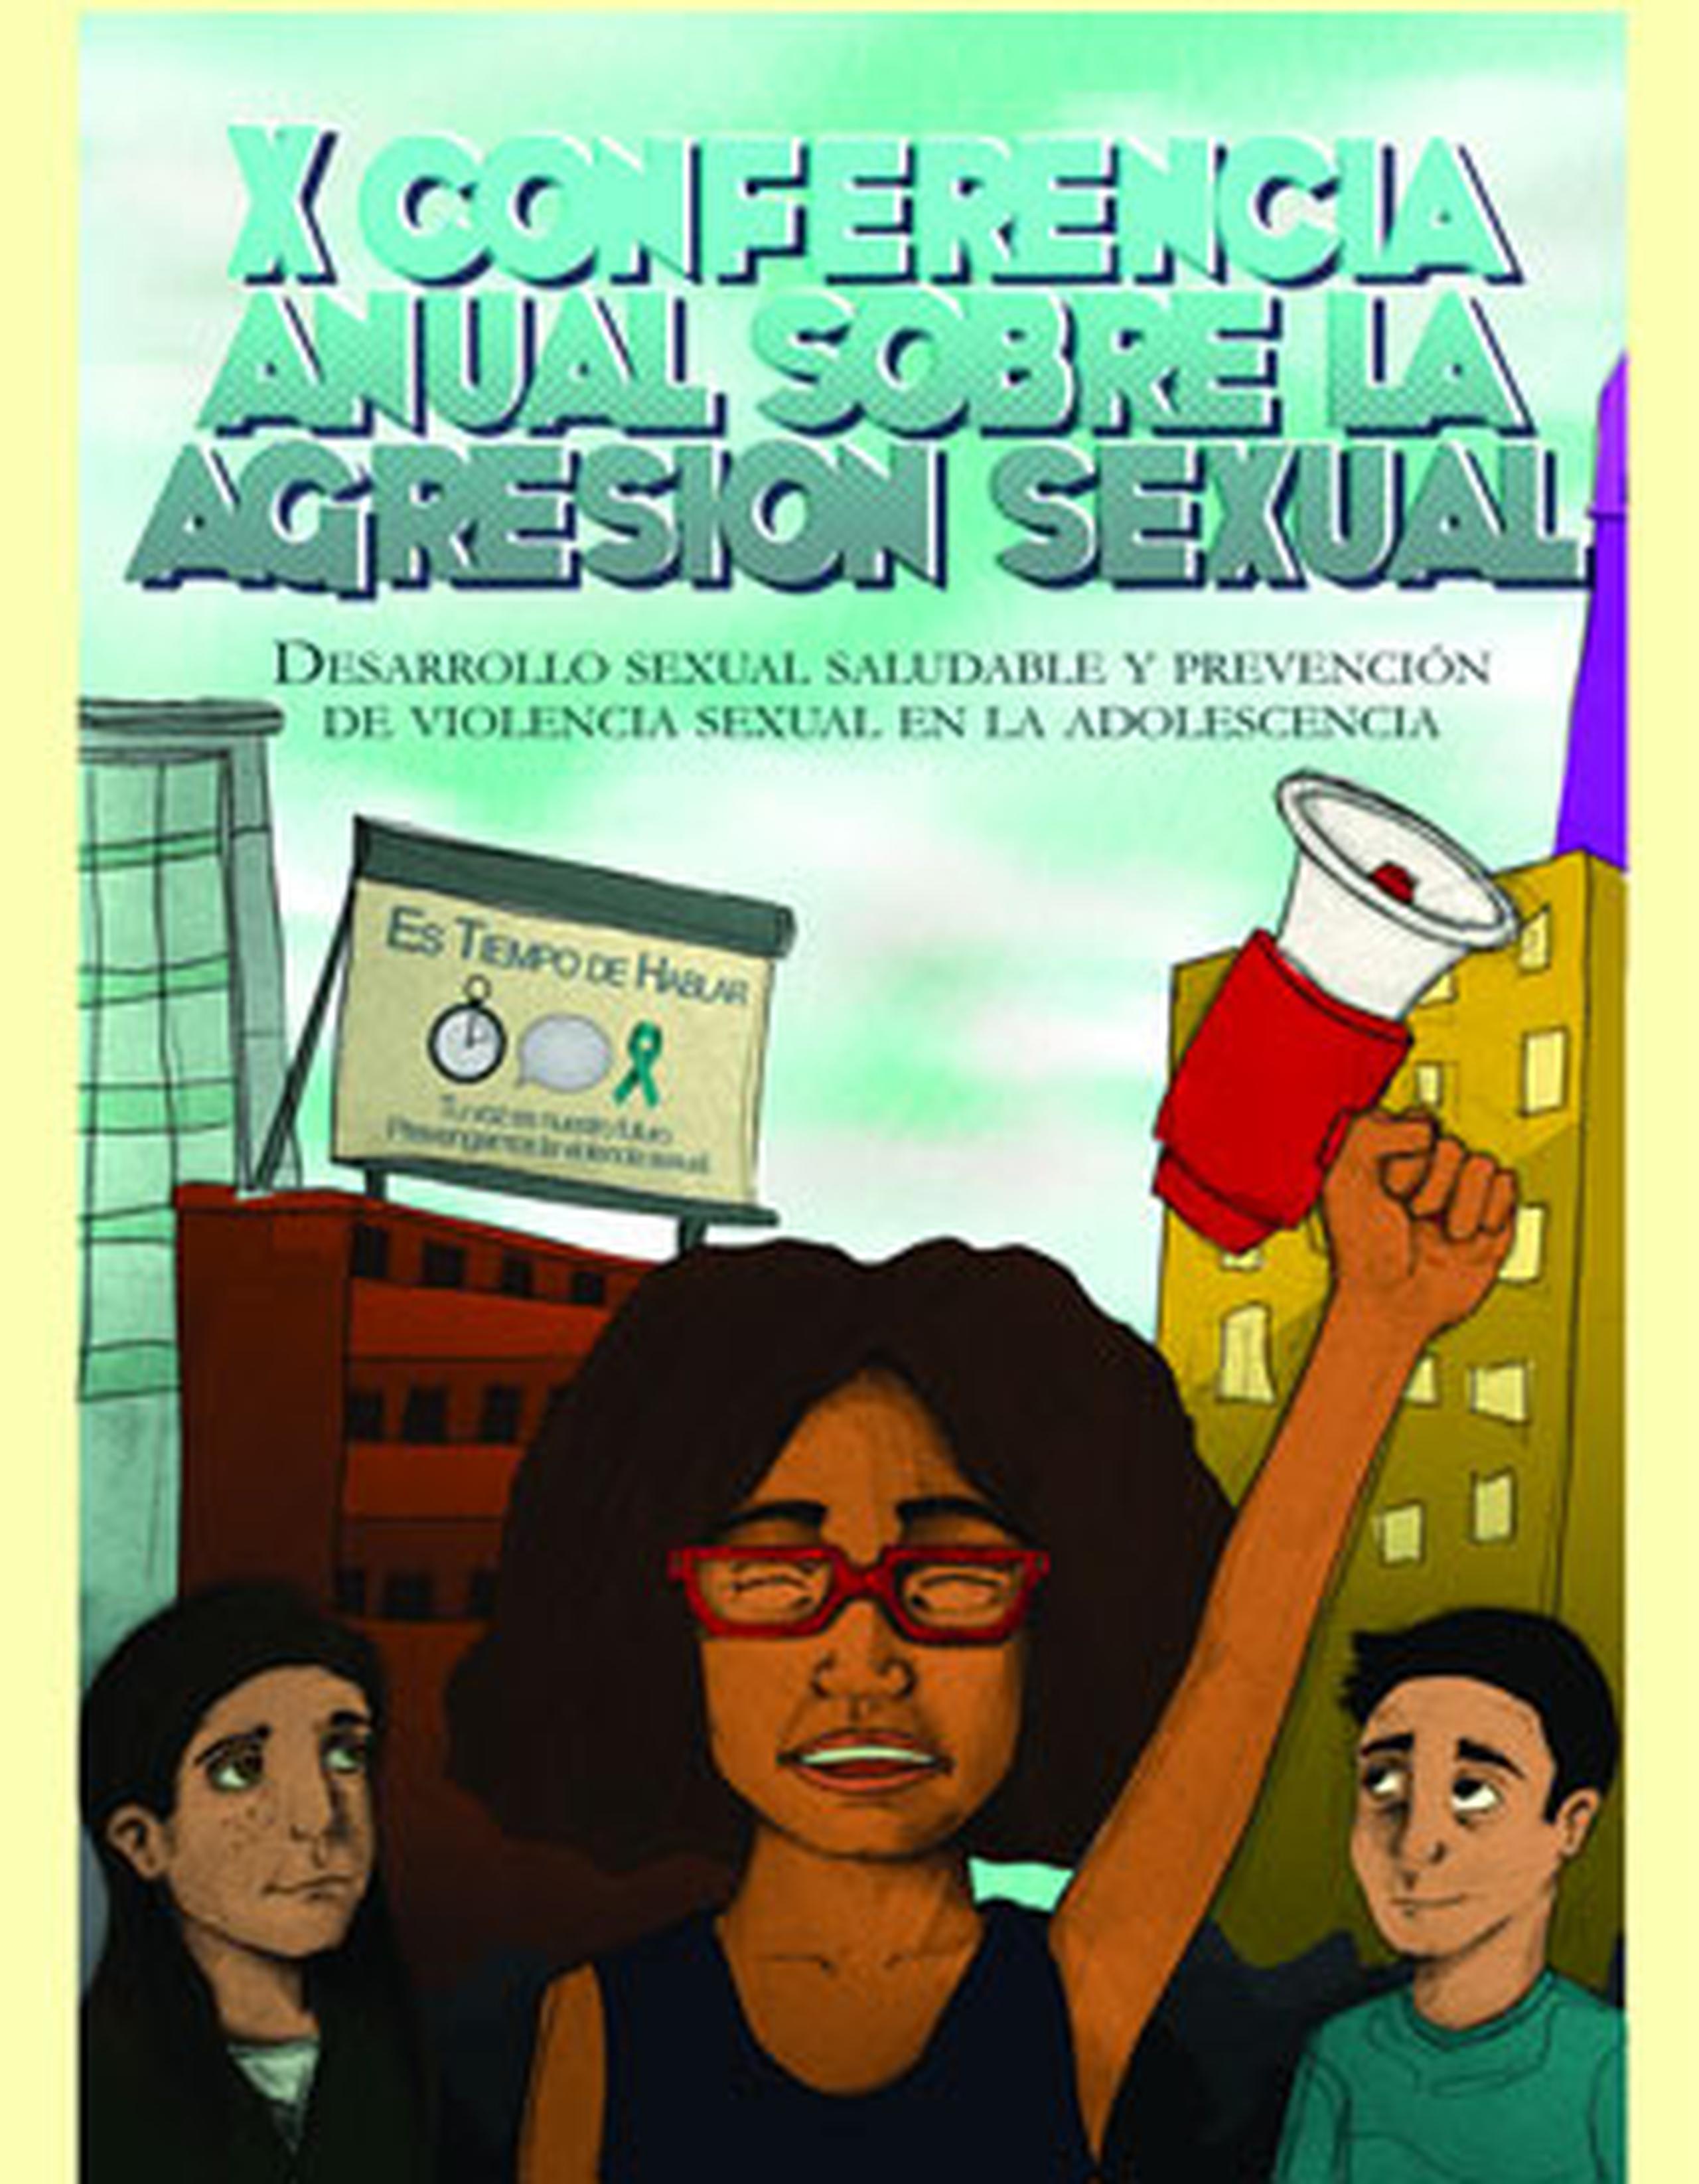 La Coordinadora informó que, además, celebrarán la XV Conferencia Anual sobre Agresión Sexual: Desarrollo sexual saludable y prevención de violencia sexual en la adolescencia. (Suministrada)